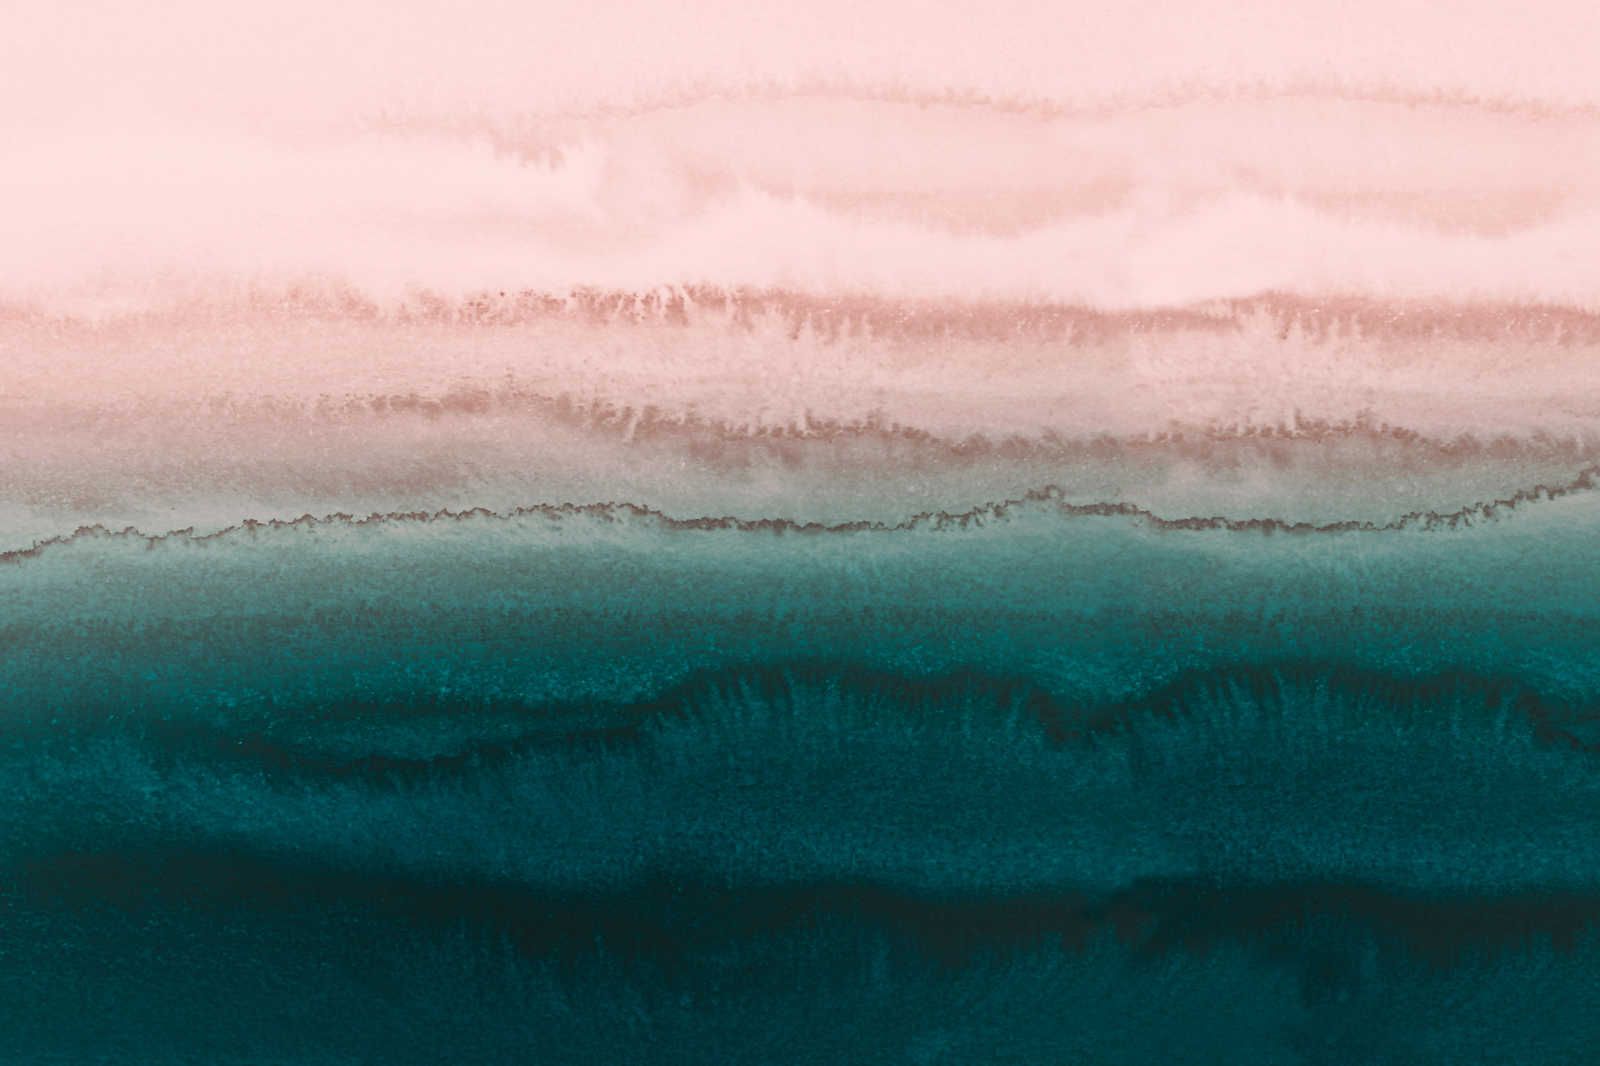             Gezeiten Leinwandbild mit abstraktem Wasser Aquarell – 1,20 m x 0,80 m
        